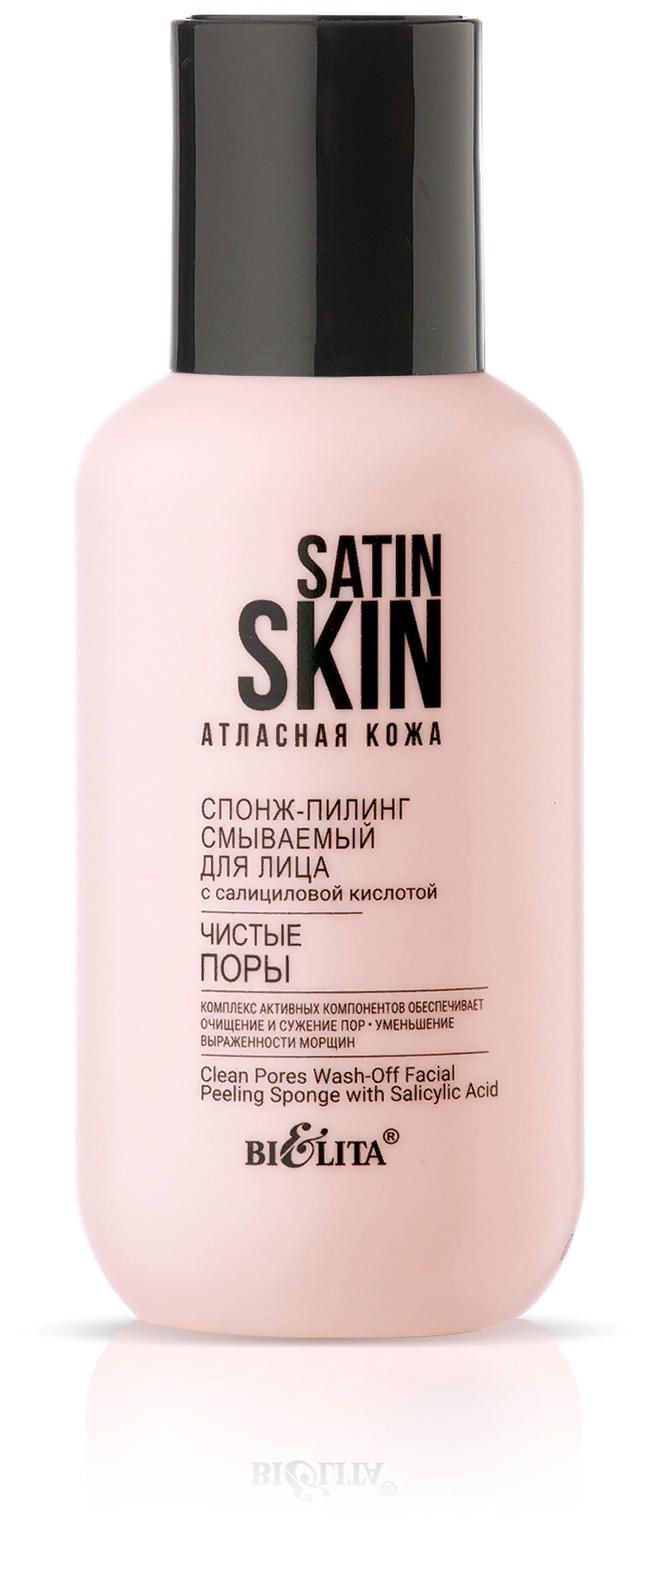 Пилинг-спонж смываемый для лица с салициловой кислотой “Чистые поры” Satin Skin, 95мл	 Belita